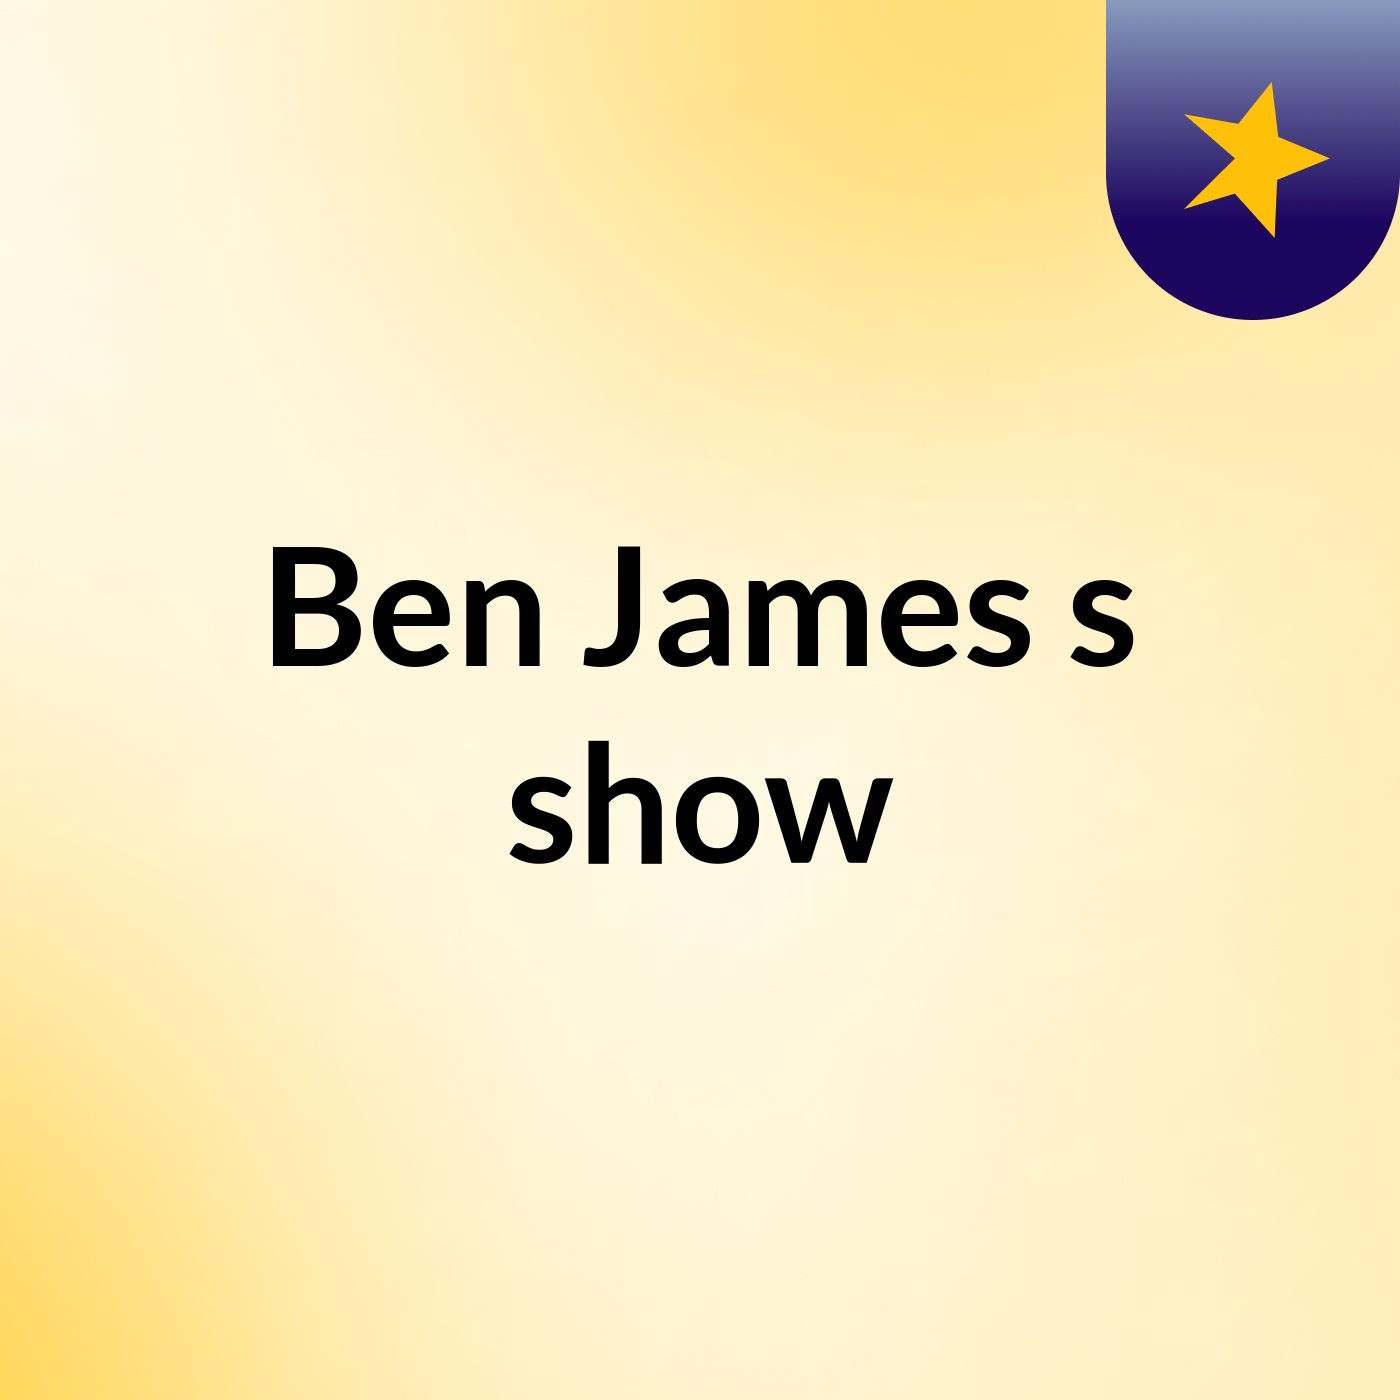 Ben James's show